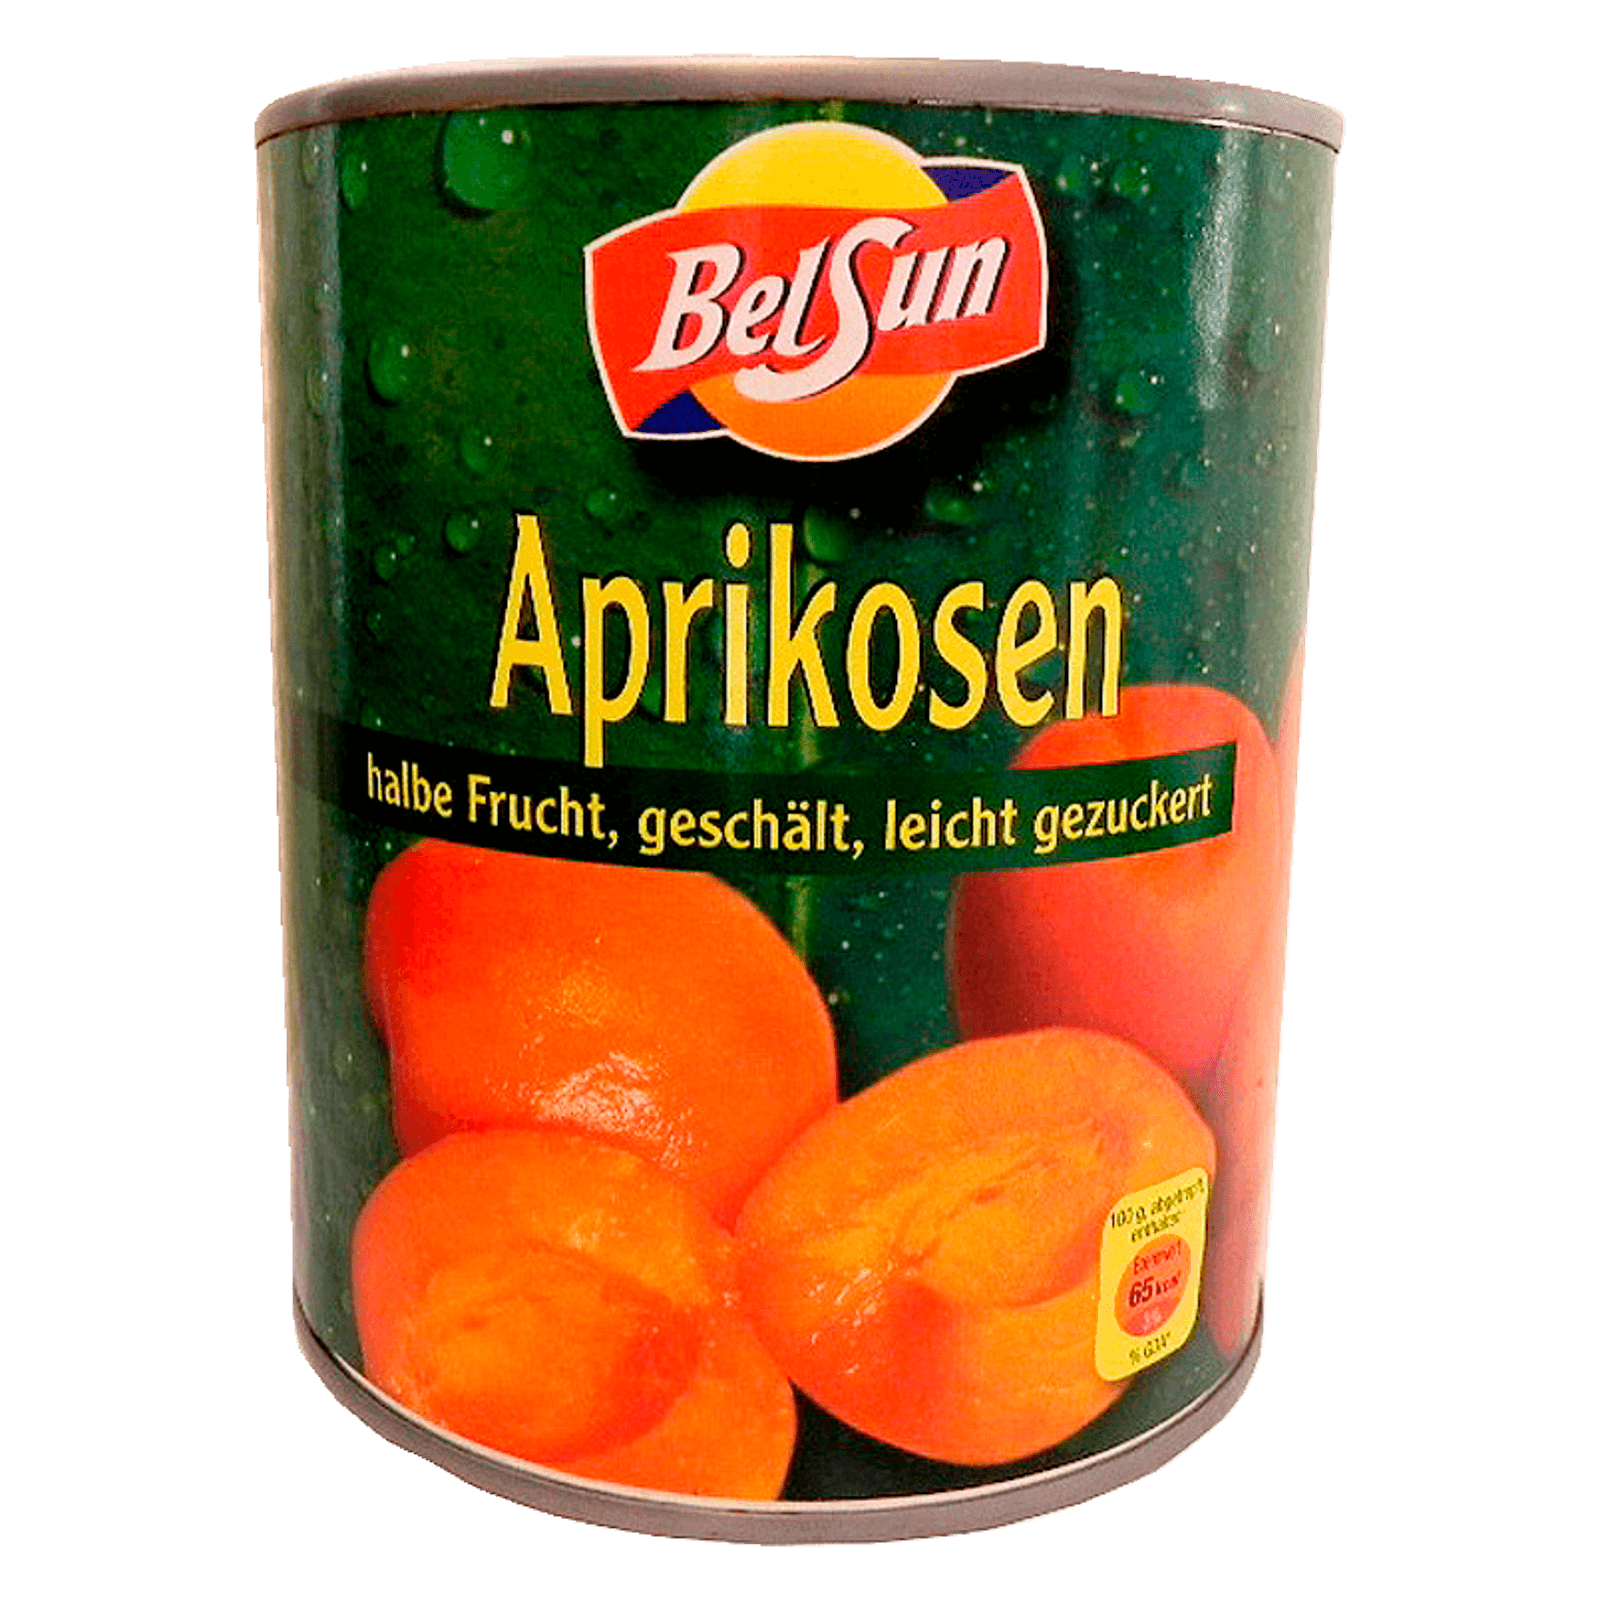 Belsun Aprikosen-Hälften 480g  für 2.29 EUR